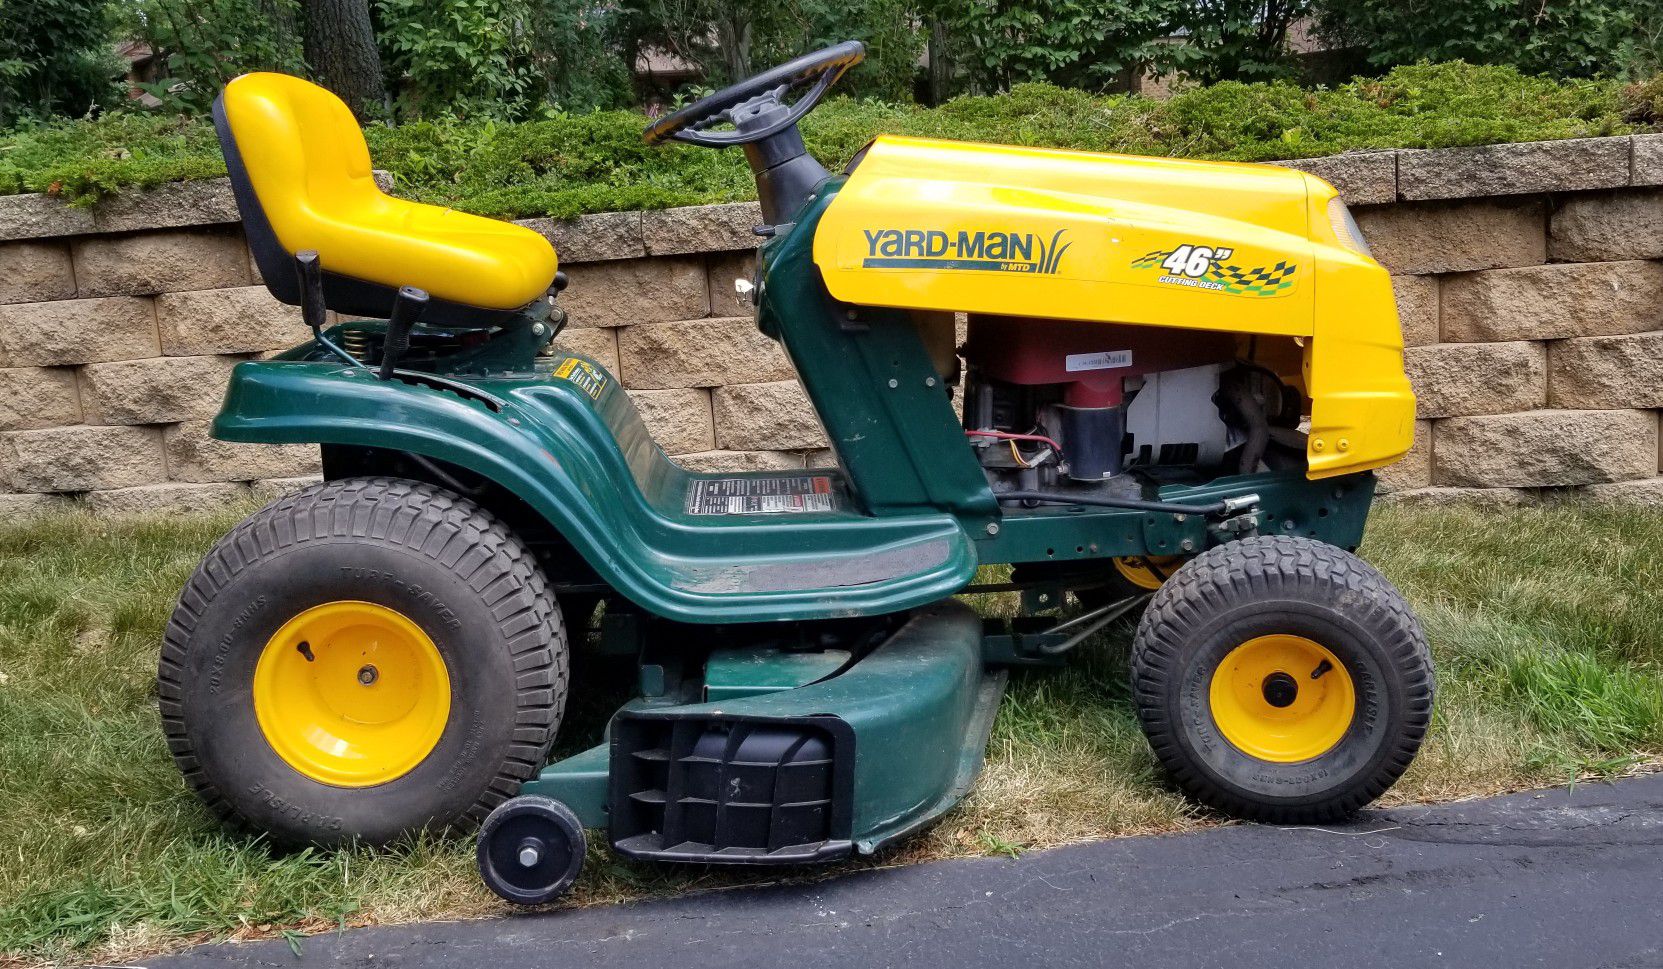 Yard-Man Lawn Tractor 46" deck